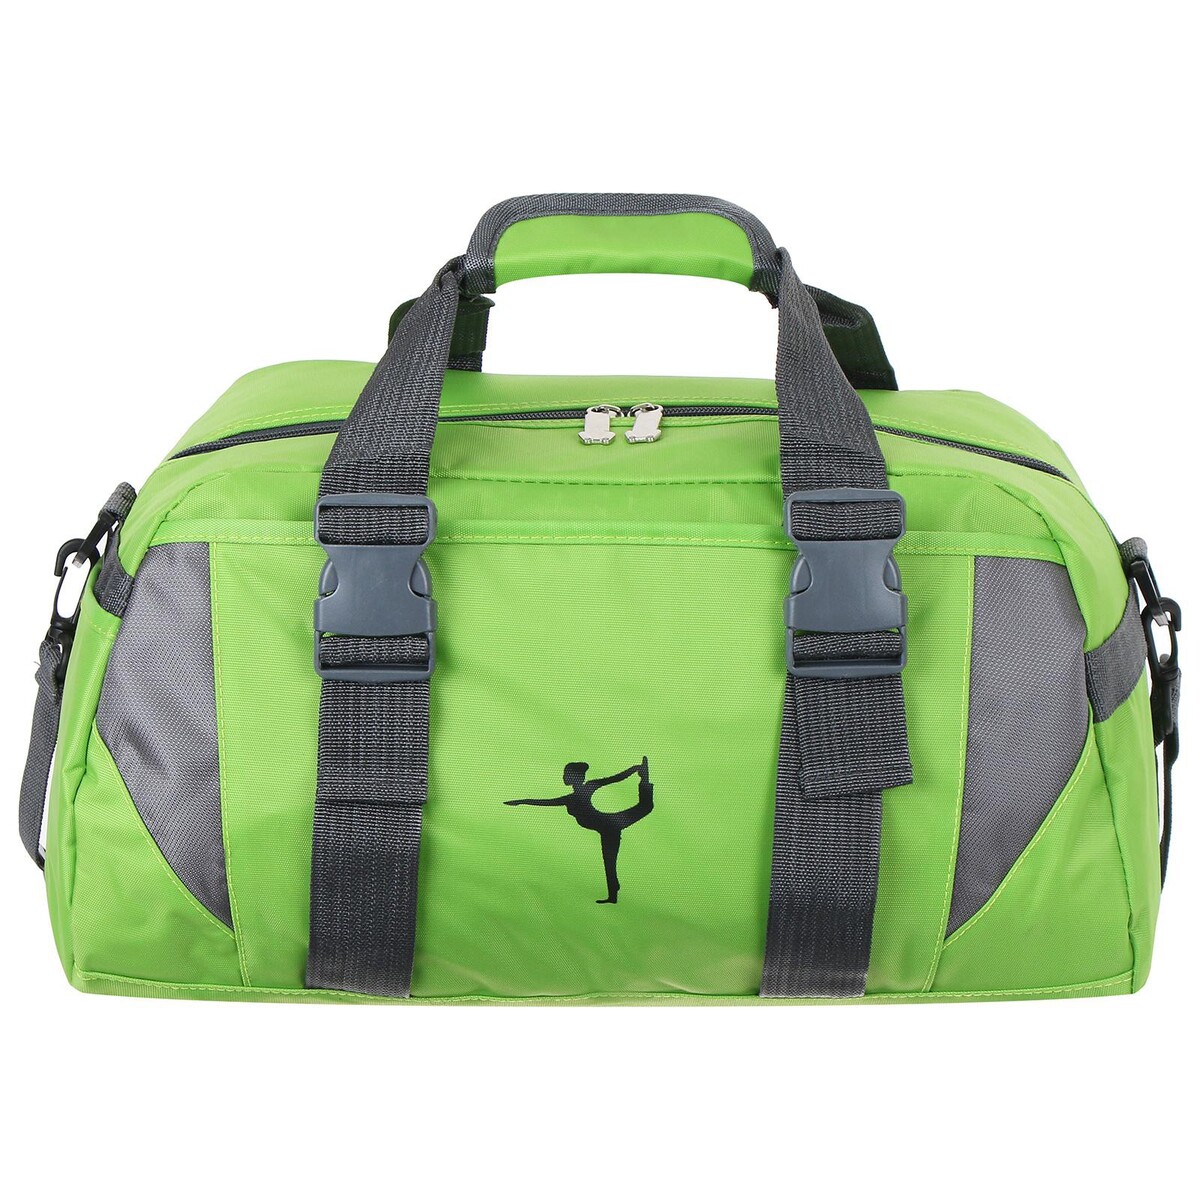 Сумка для йоги и гимнастики sangh 37х20х20 см, цвет зеленый сумка для йоги sangh 37х20х20 см зеленый